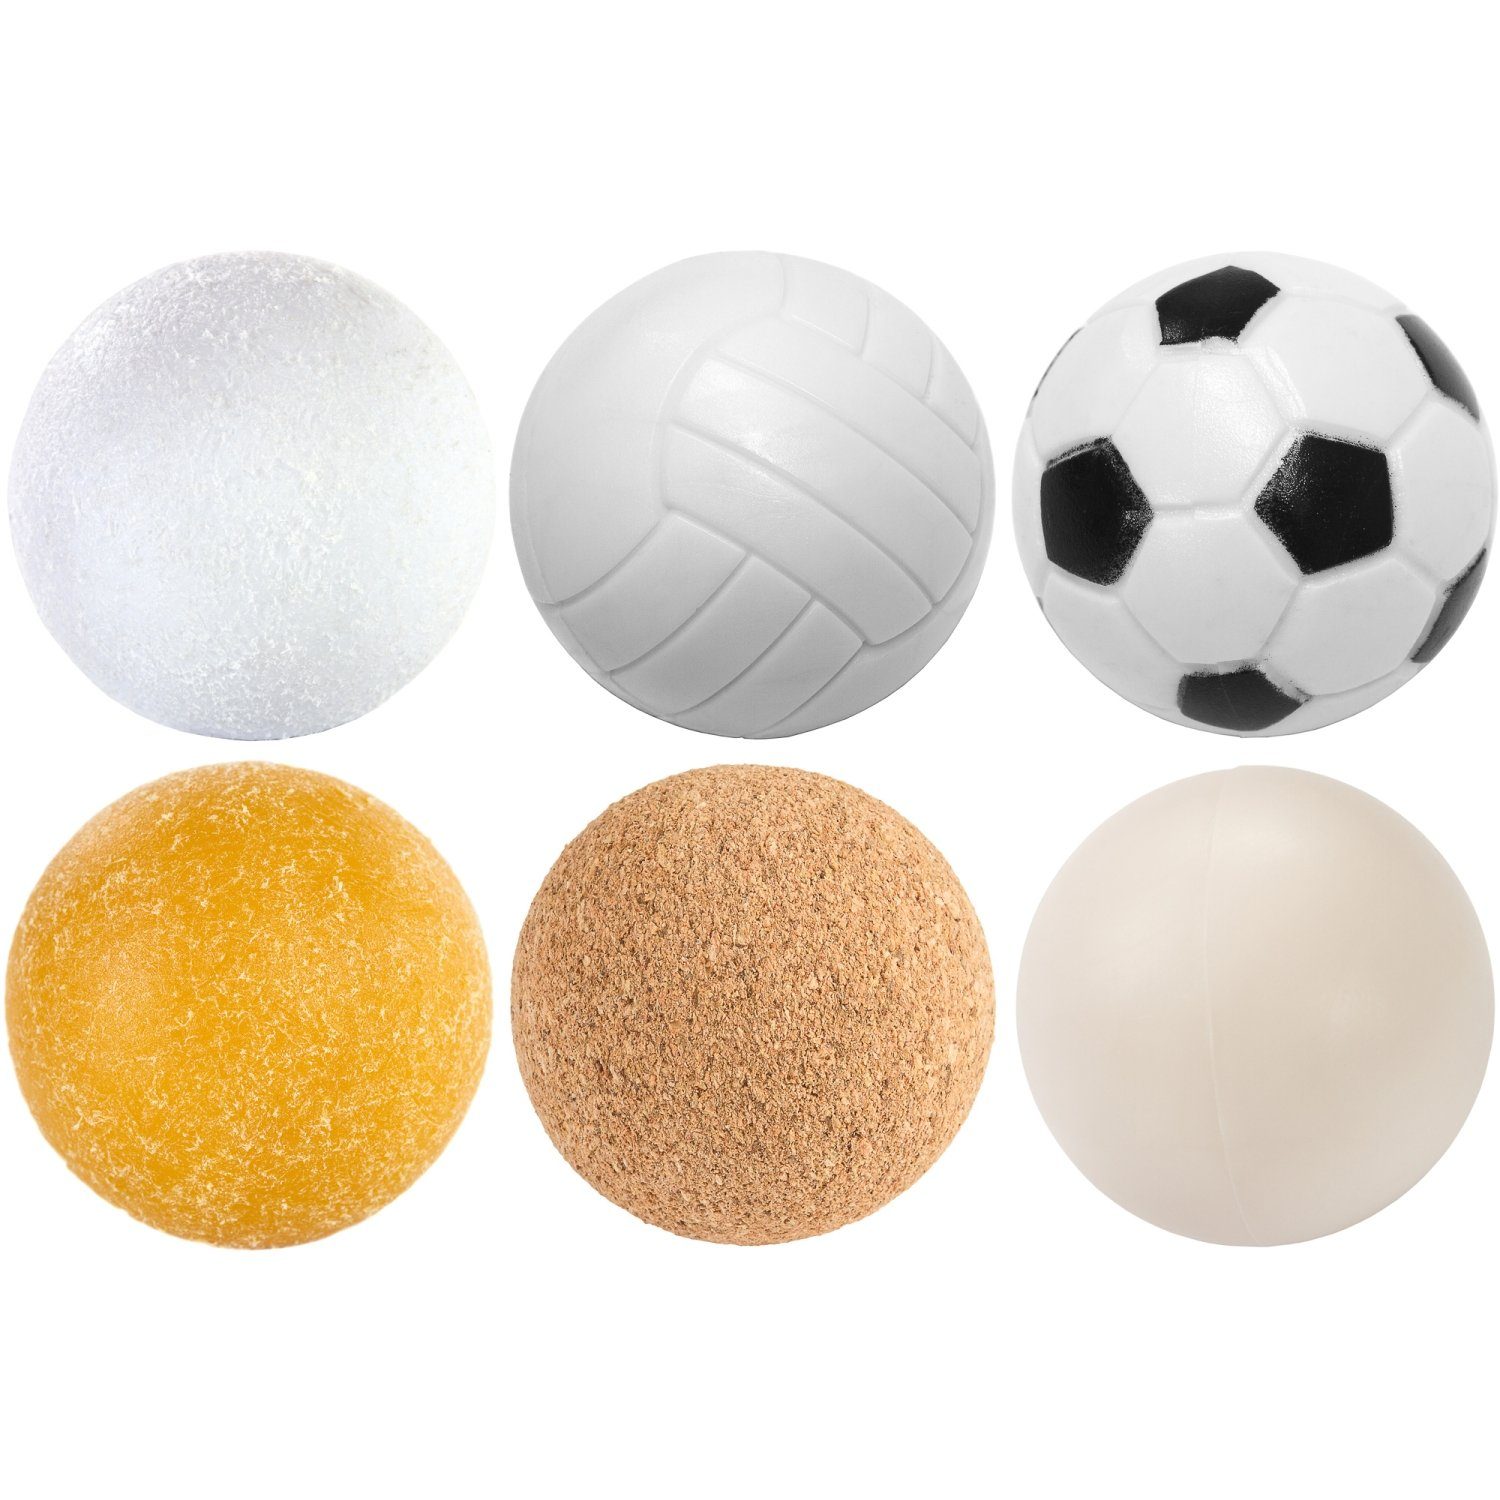 unterschiedliche PE,PU, Kunststoff), Games 35mm, Planet Kickerbälle, PLANET GAMES Kickerbälle Stück oder 12 6 Sorten 6 Ball (Kork, (Set), Durchmesser Tischfussball Spielball Mischung,